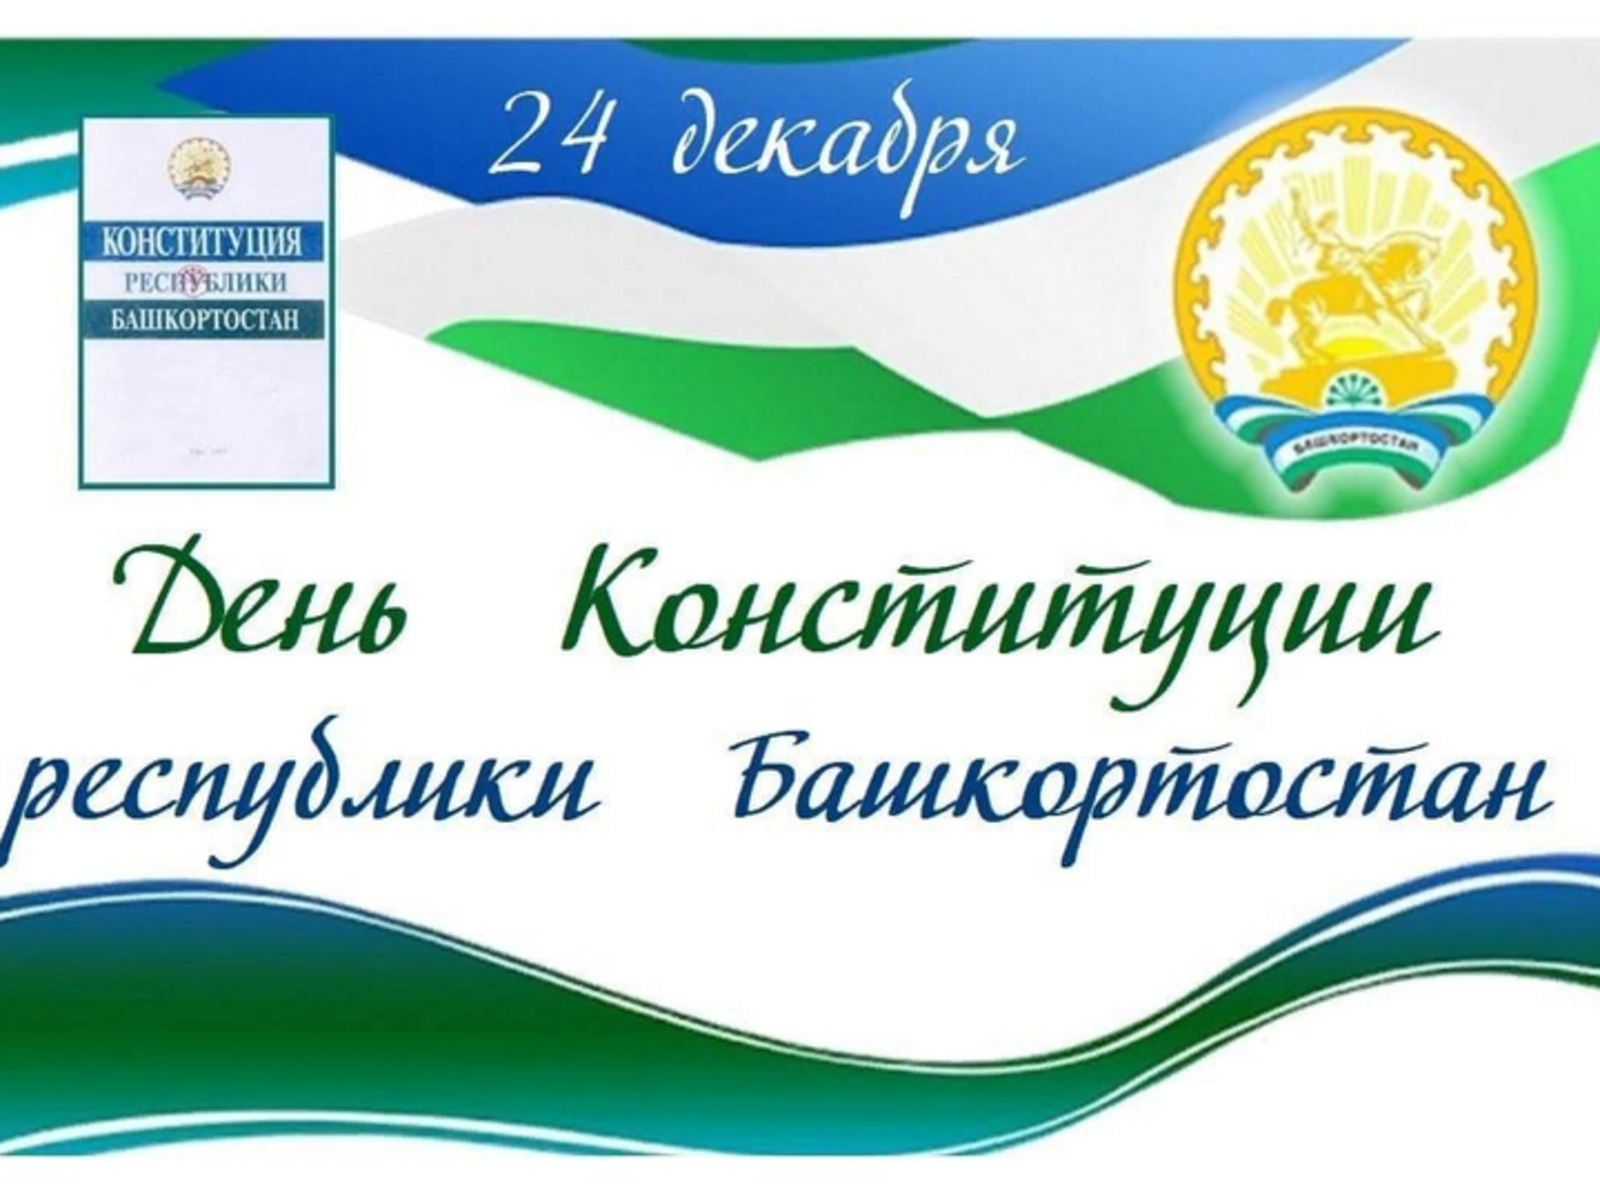 Конституция Башкортостана